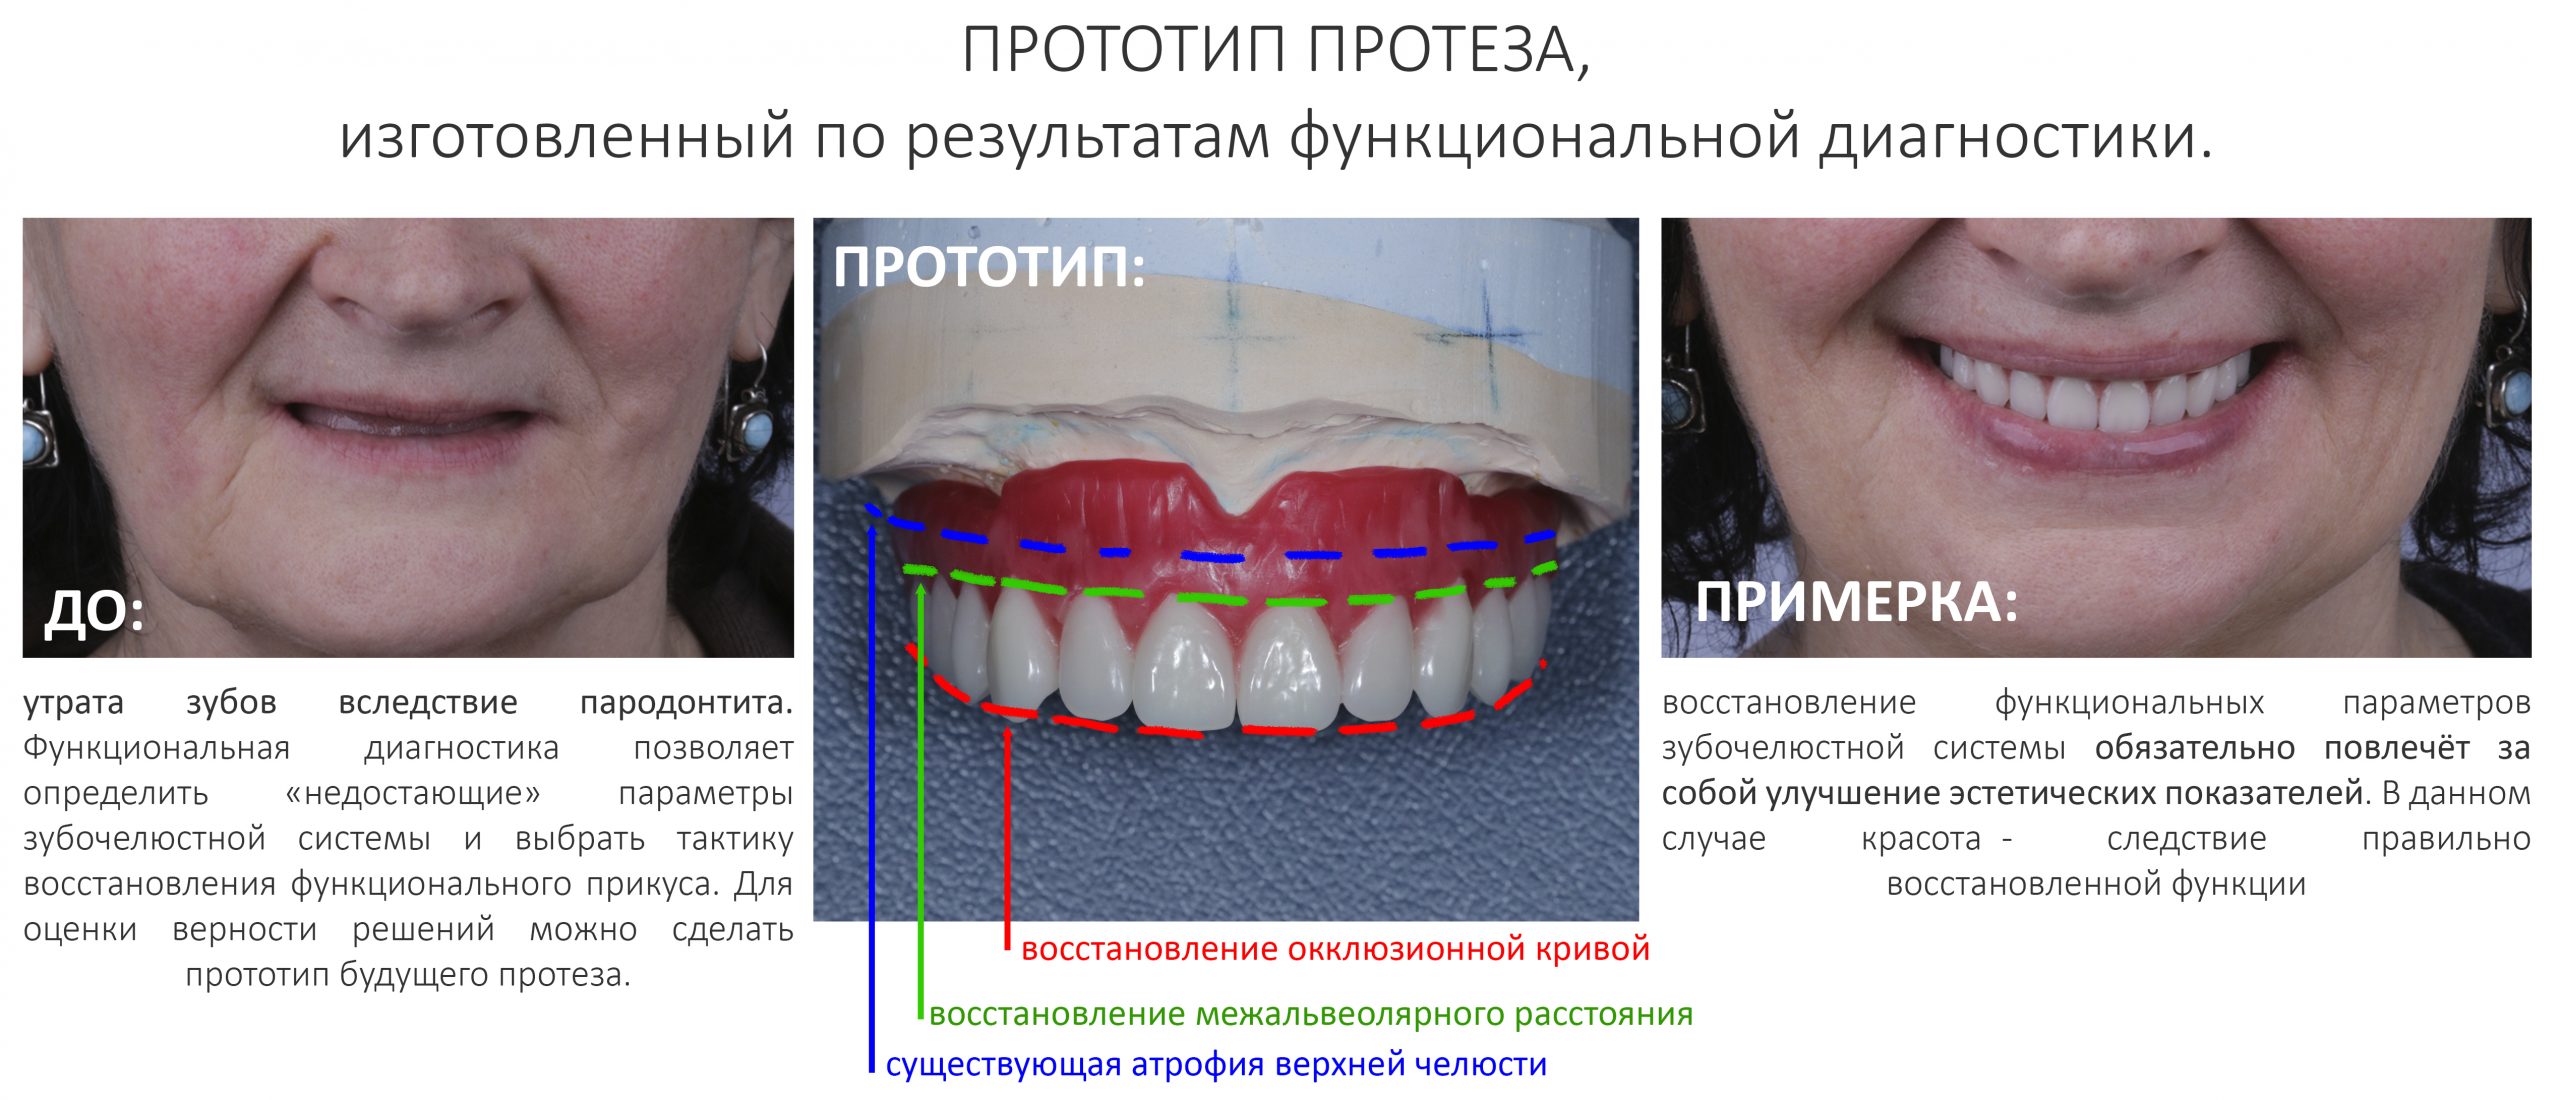 Какие зубные протезы лучше при отсутствии зубов. Несъемные протезы при полном отсутствии зубов. Несъёмные зубные протезы при полном отсутствии зубов. Несъёмные зубные протезы при полном отсутствии. Протезирование на имплантах при полном отсутствии зубов.